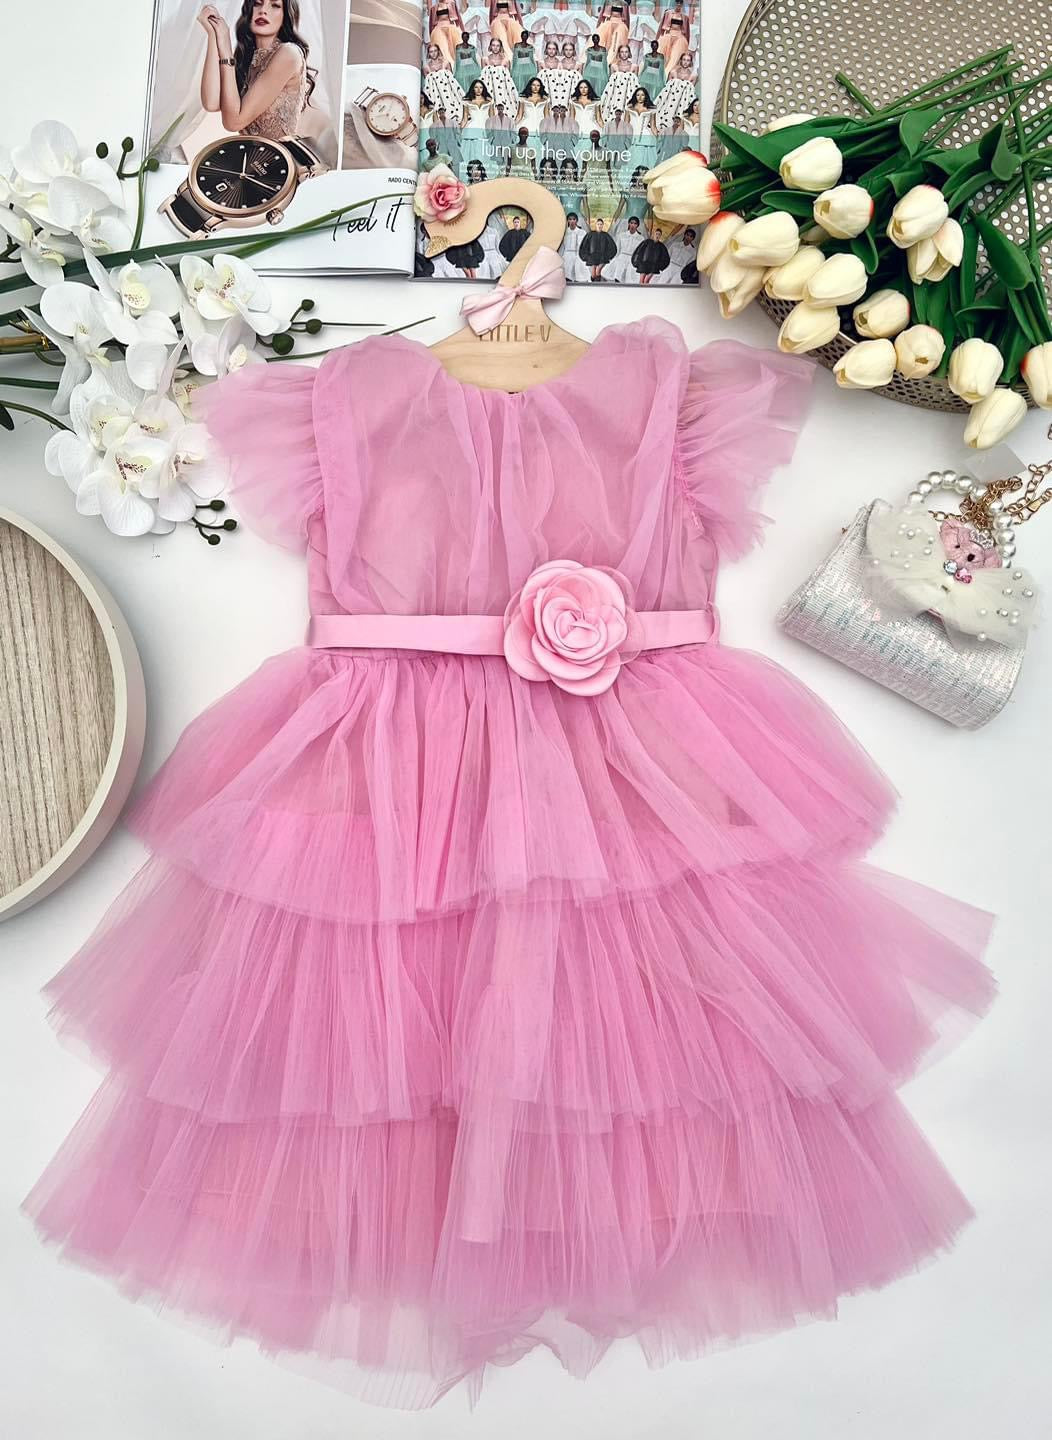 Pink Flower dress